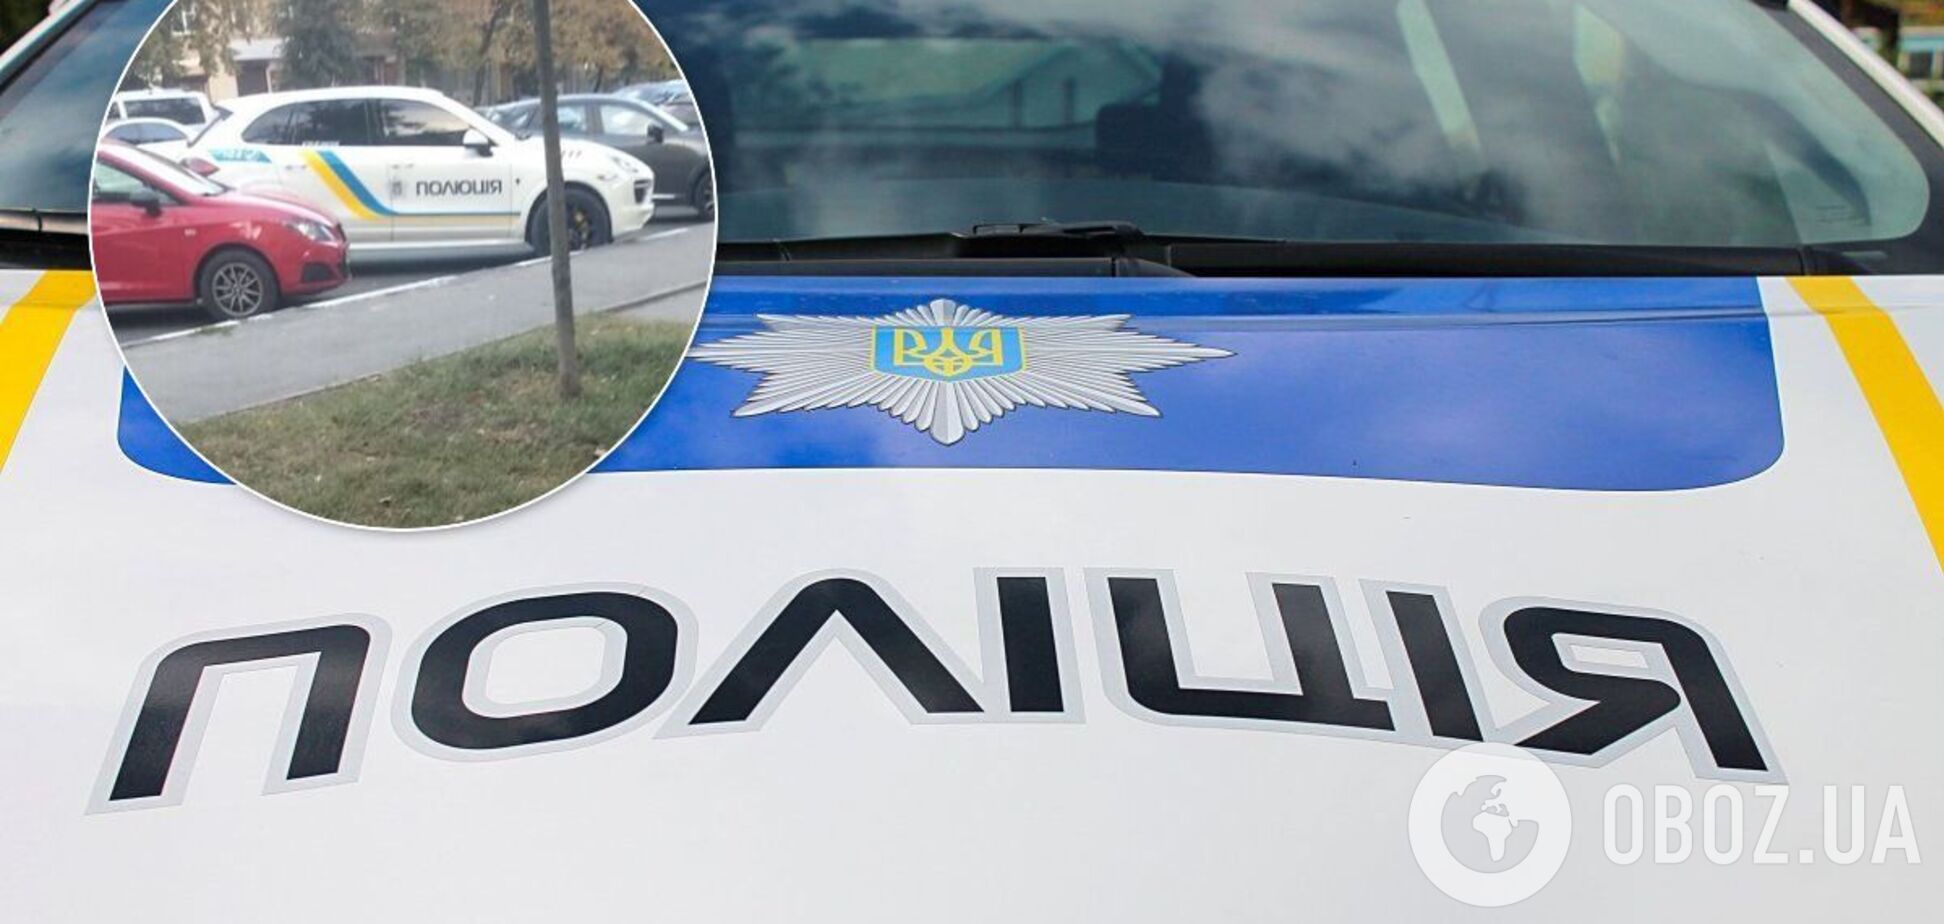 В Харькове заметили Porsche Cayenne с полицейской символикой